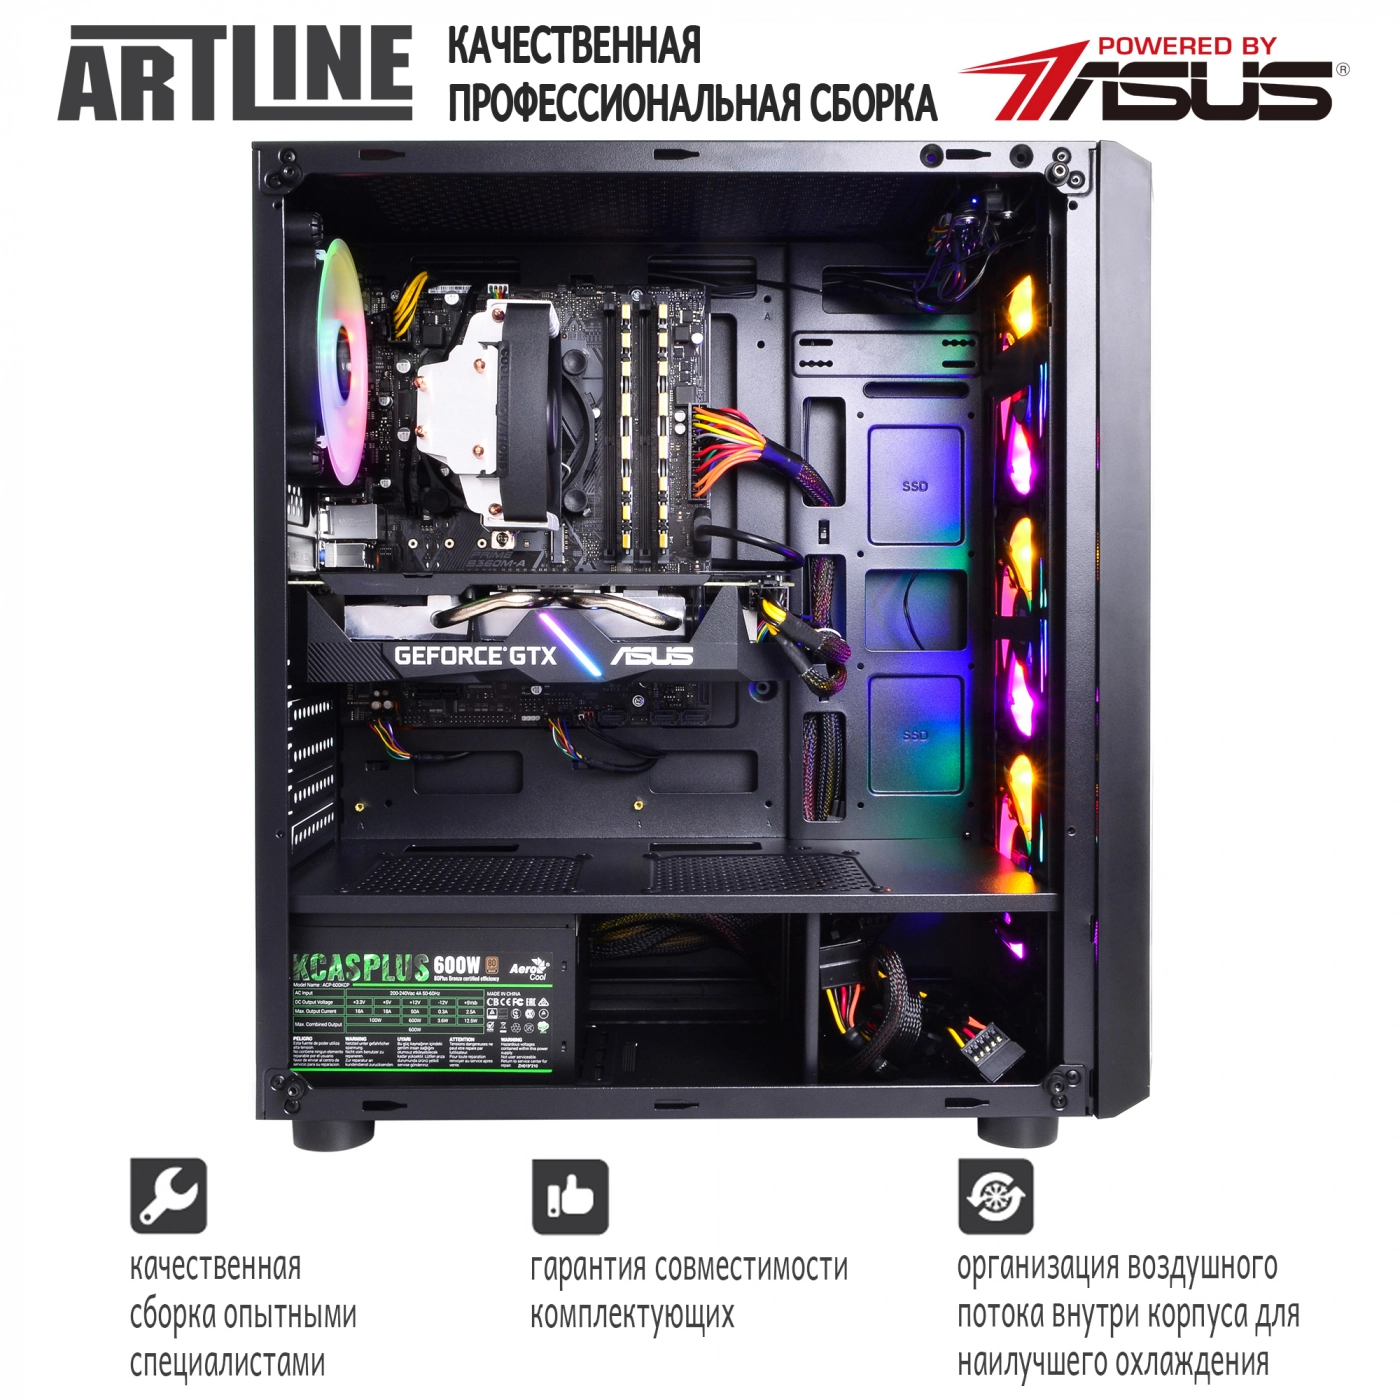 Купить Компьютер ARTLINE Gaming X74v05 - фото 9